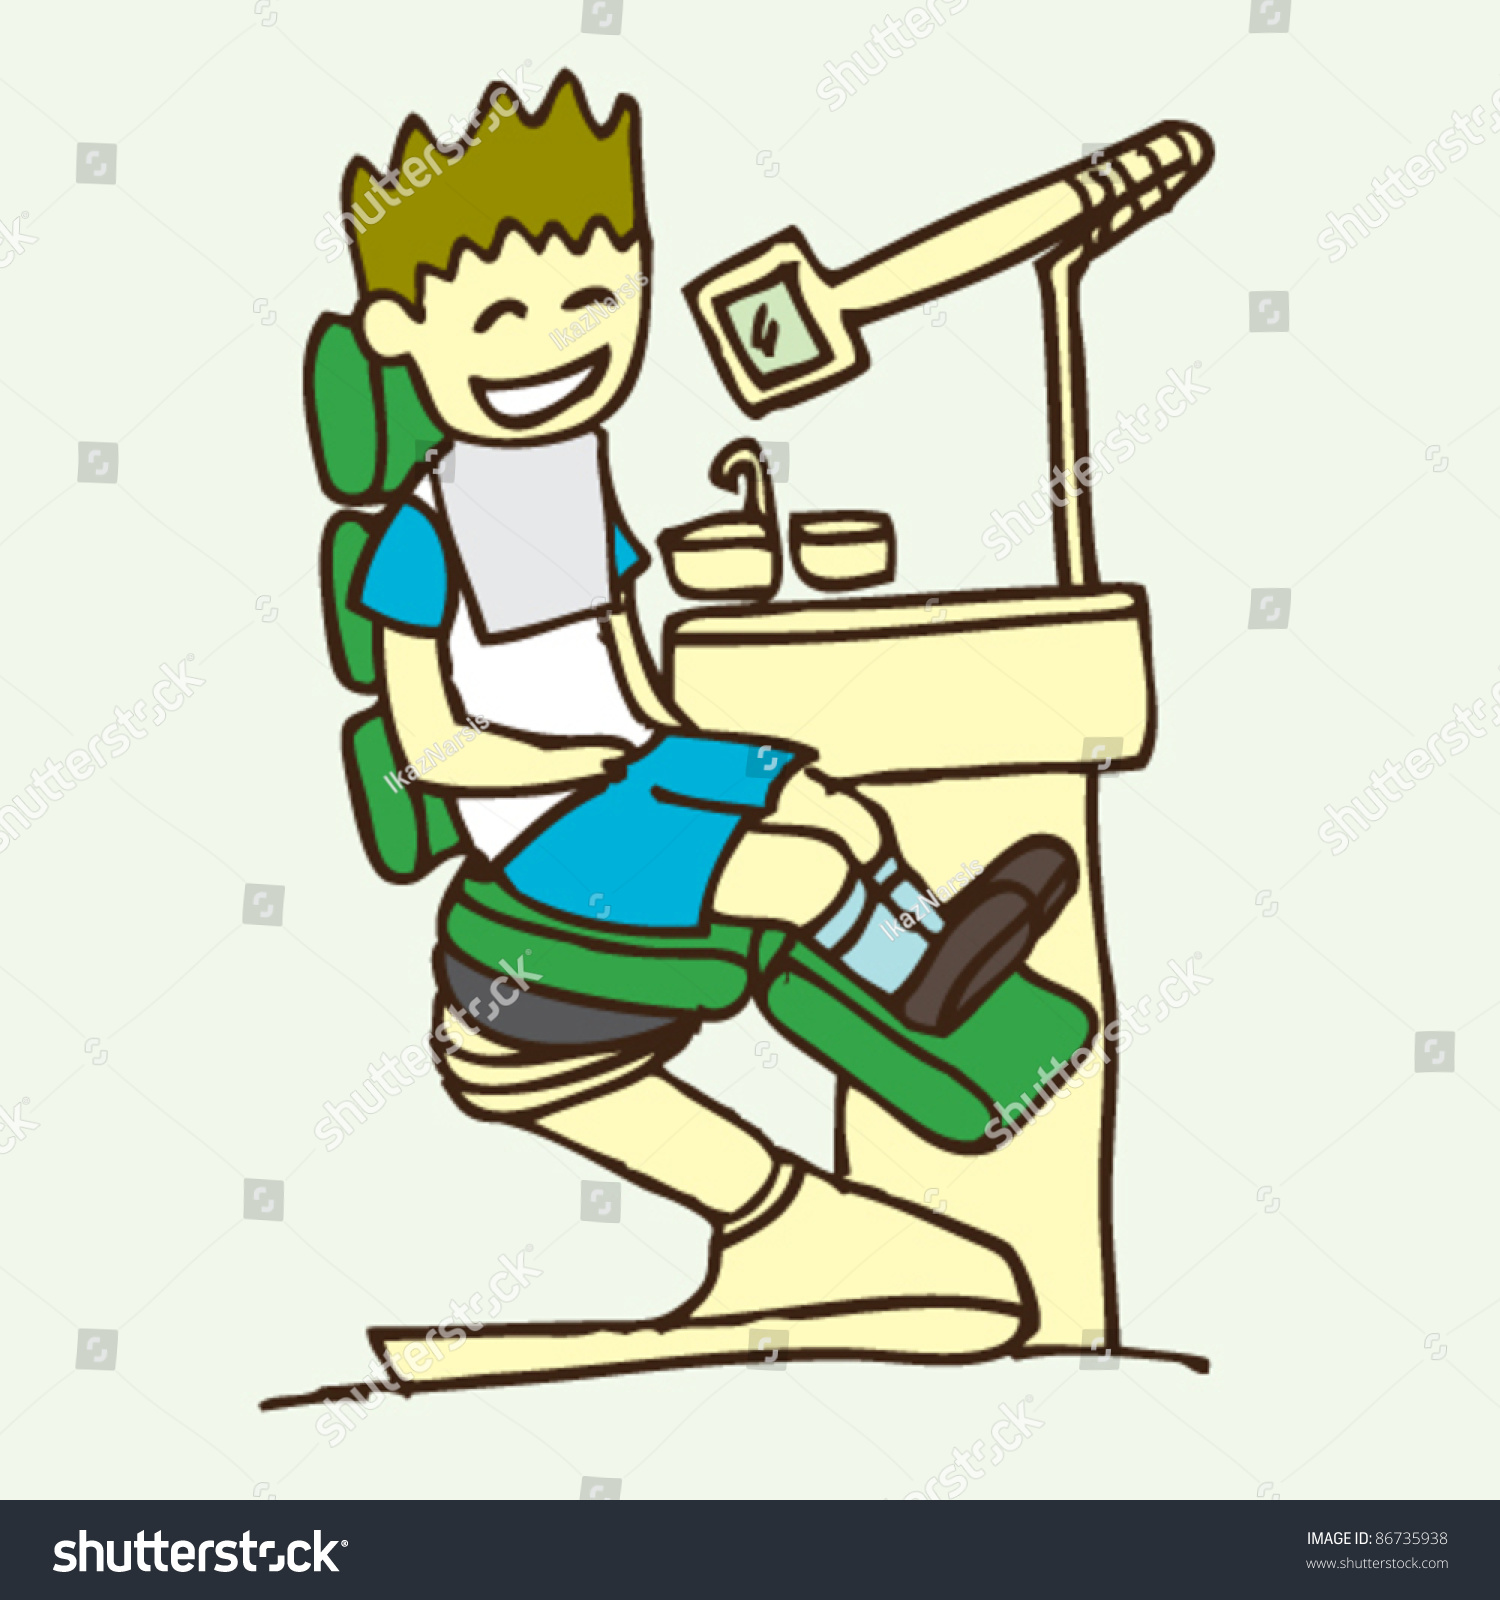 Doodle Sketchy Illustration Of Dentist - 86735938 : Shutterstock